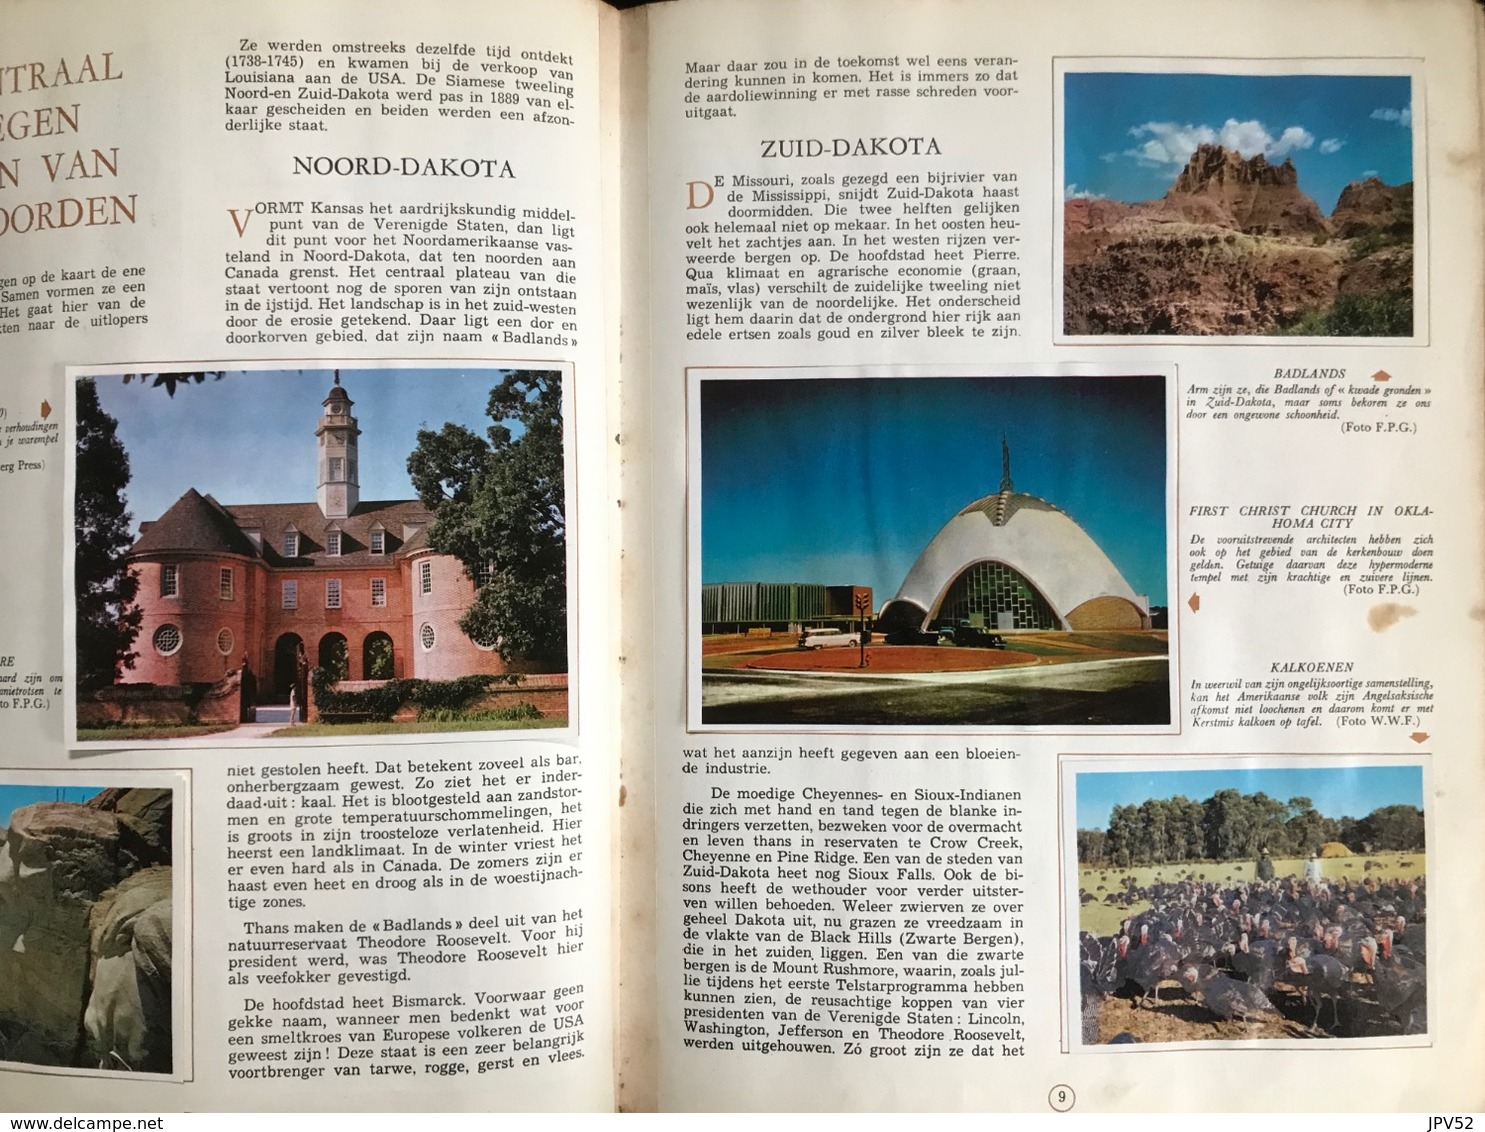 (314) Aardrijkskunde Van Amerika - De Lombard TINTIN - KUIFJE Uitgave - Deel II -1963 - Geography